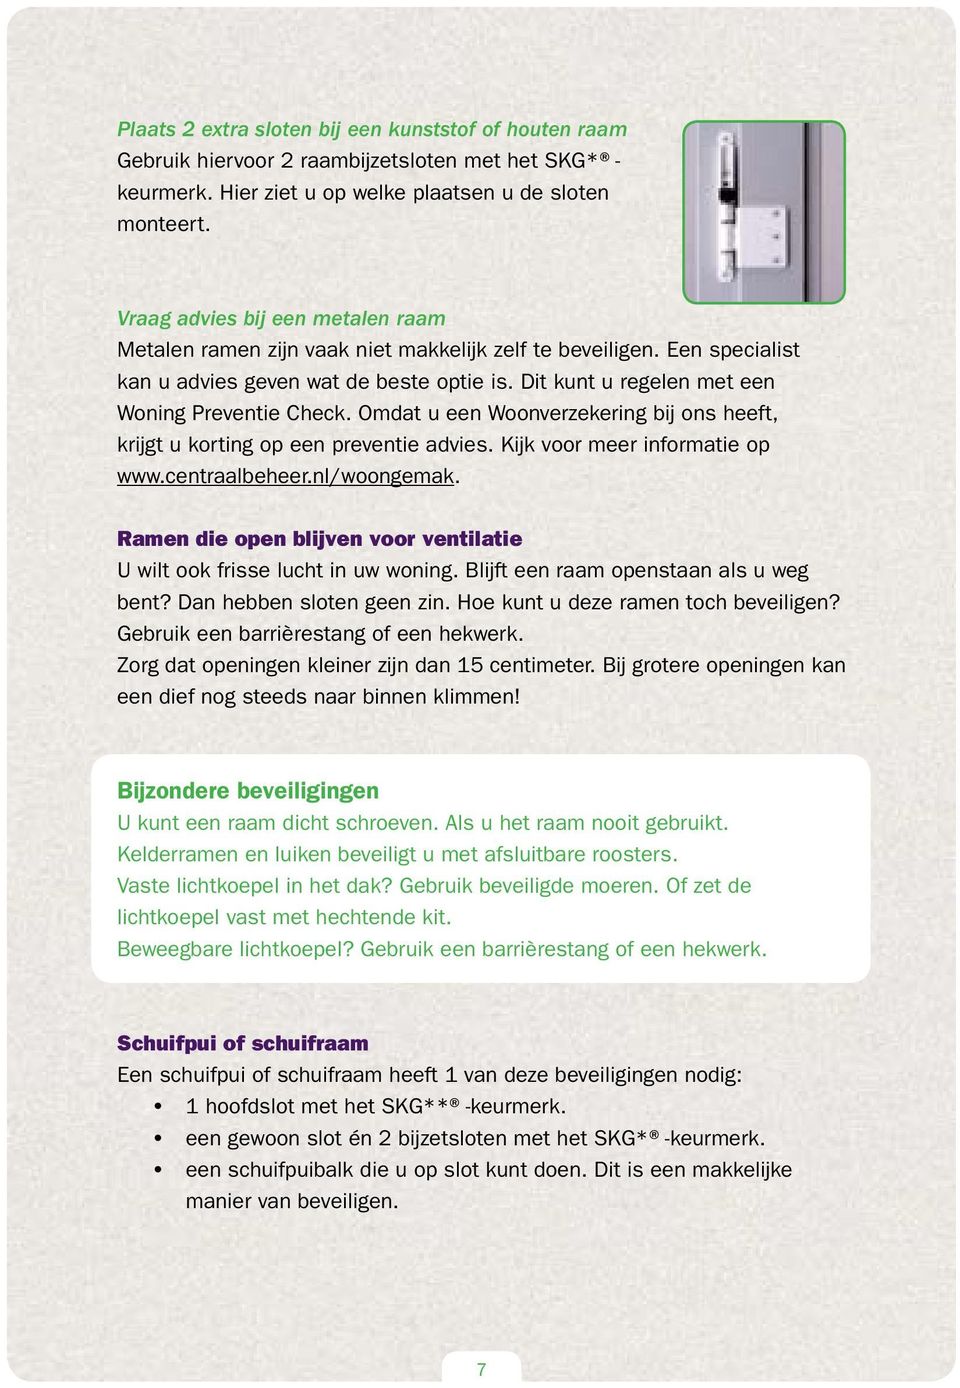 Omdat u een Woonverzekering bij ons heeft, krijgt u korting op een preventie advies. Kijk voor meer informatie op www.centraalbeheer.nl/woongemak.